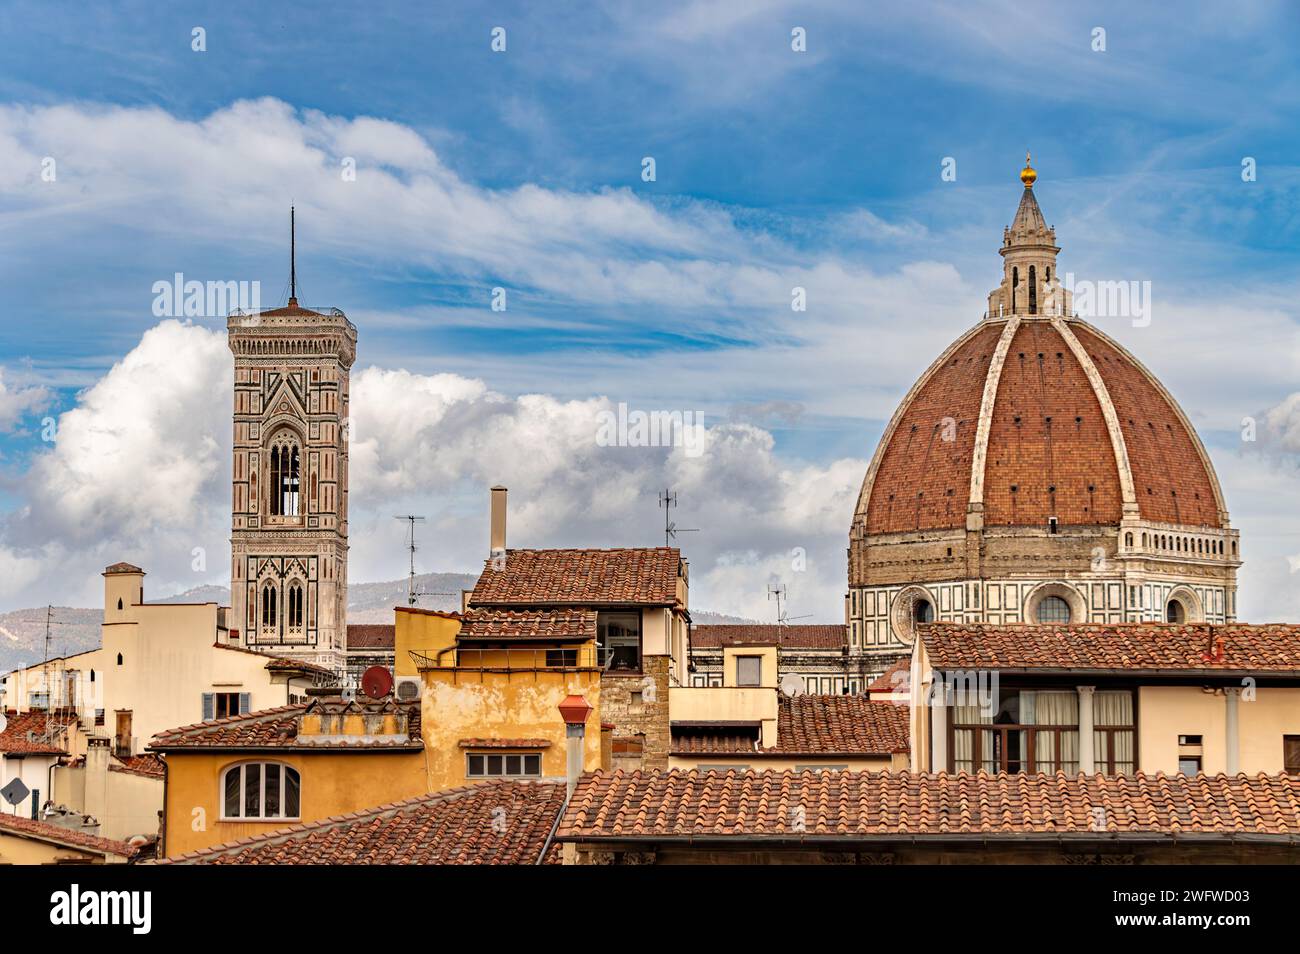 Le toit de tuiles rouges du Duomo de Florence, construit par Filippo Brunelleschi entre 1420 et 1436 , Florence, Italie Banque D'Images